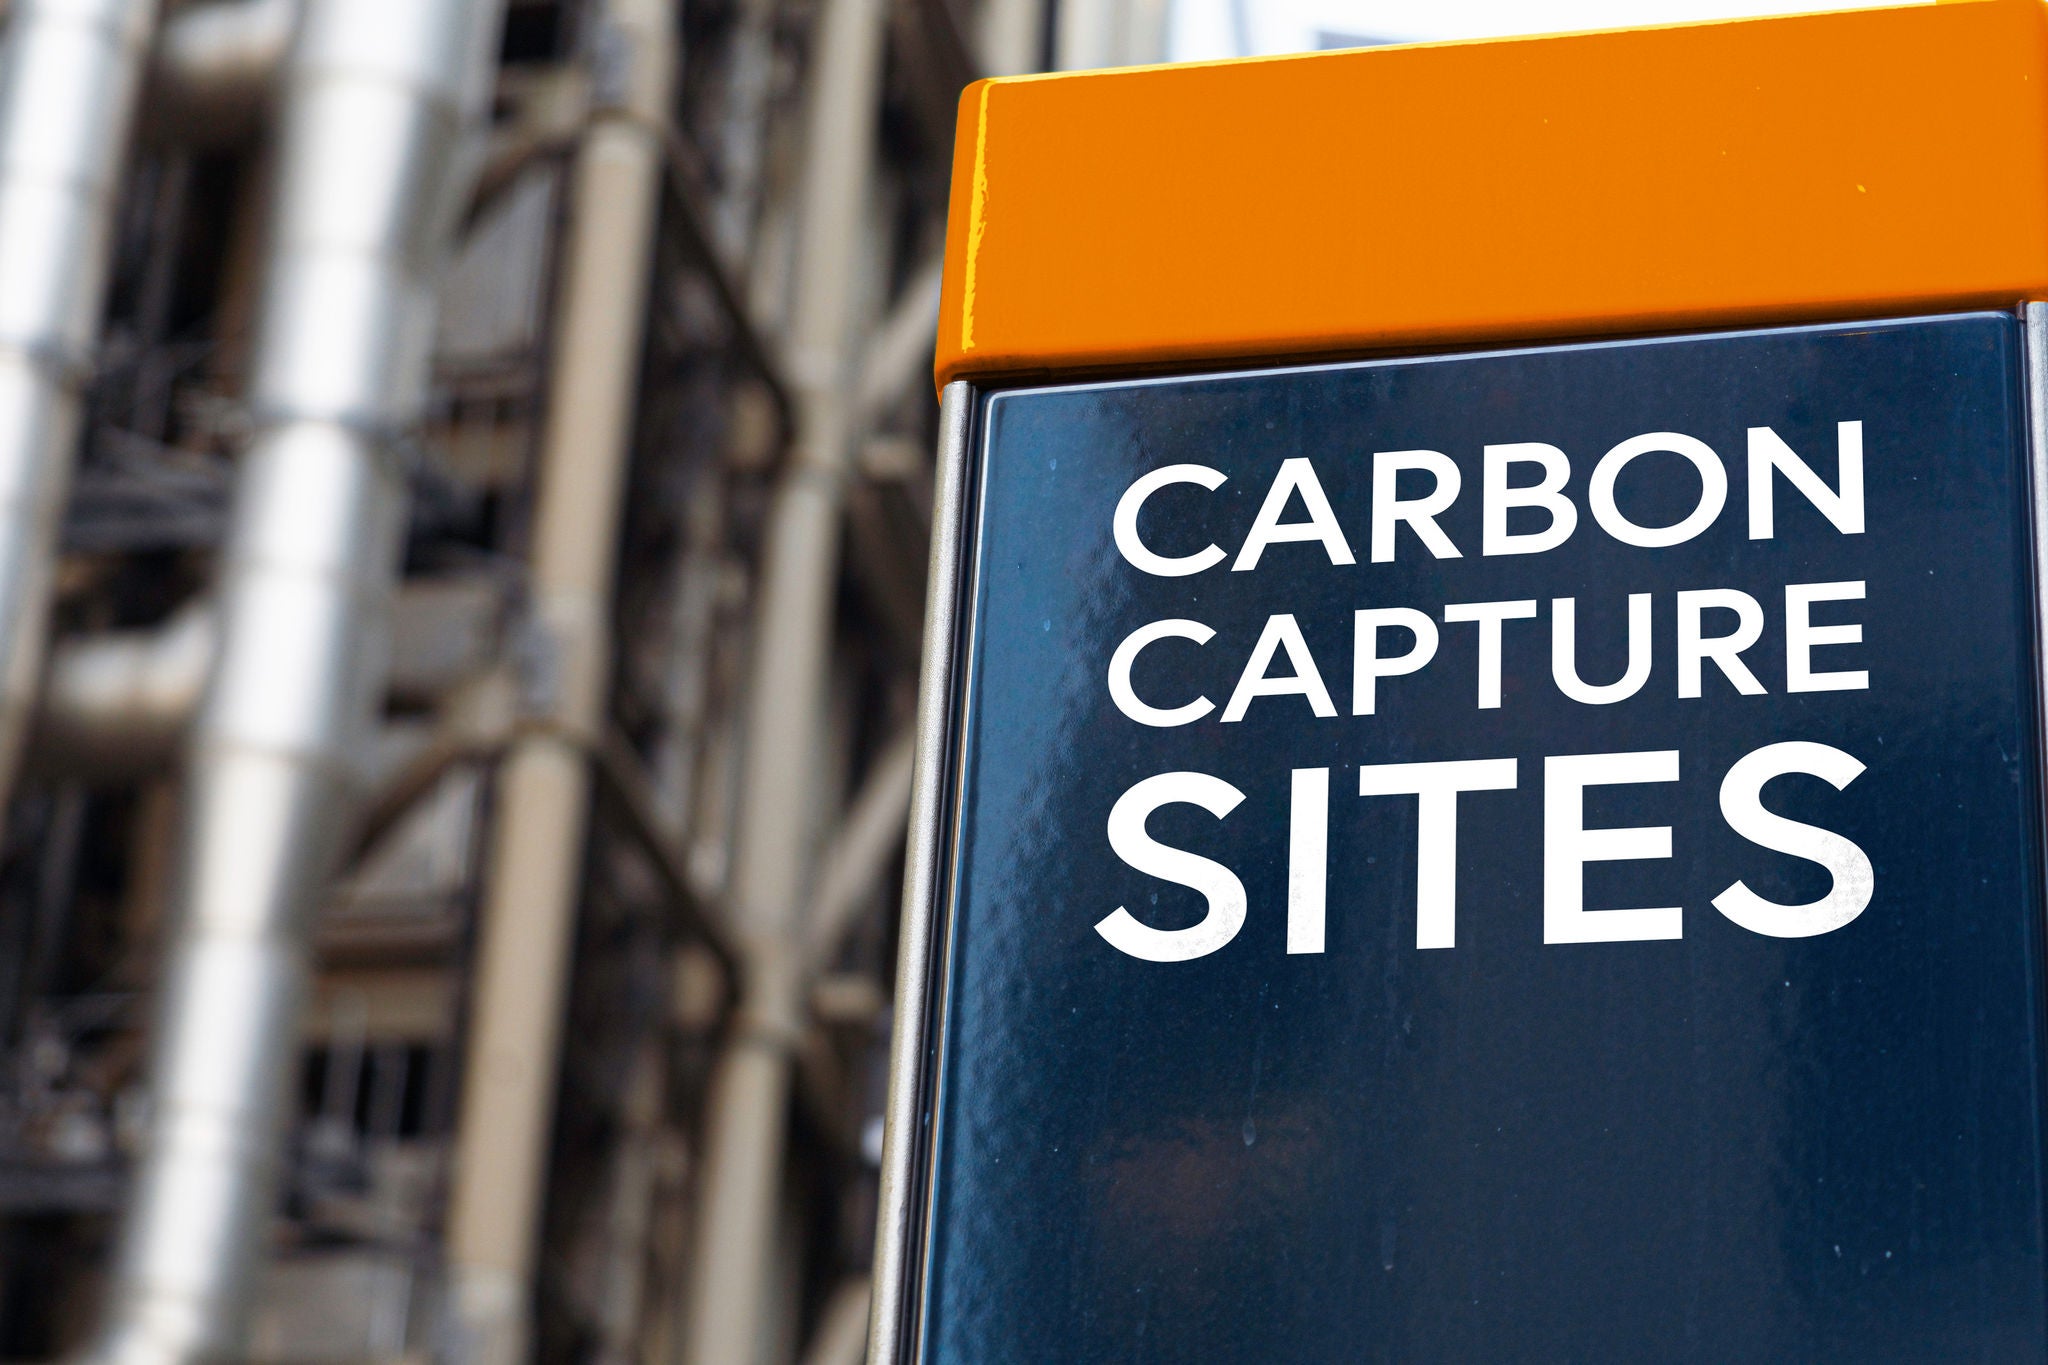 Carbon capture sites